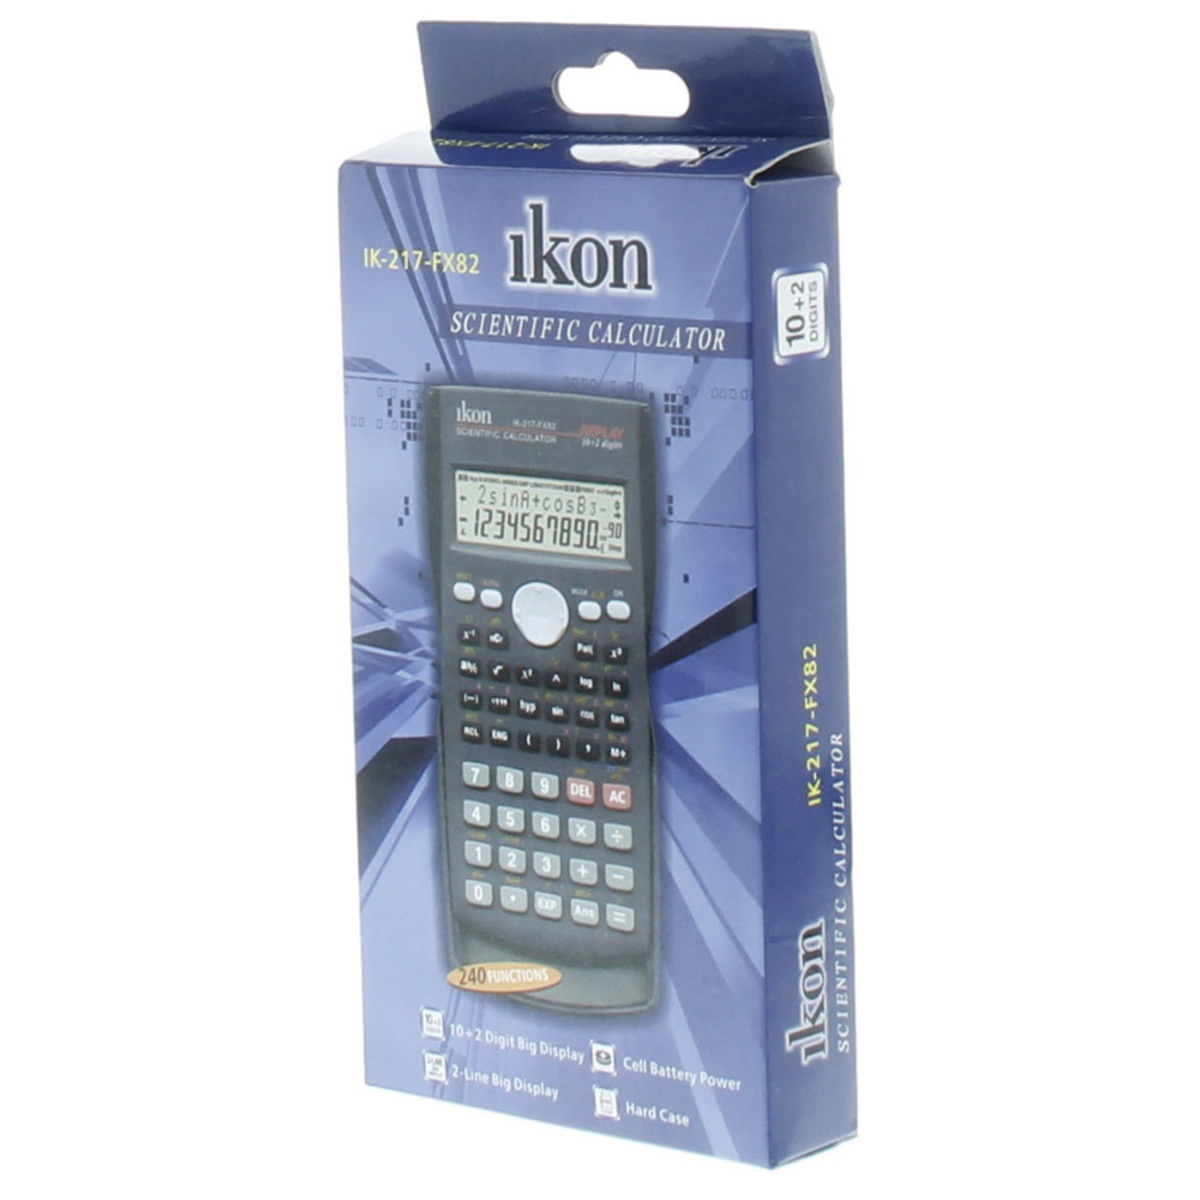 Ikon Scientific Calculator IK-217-FX82